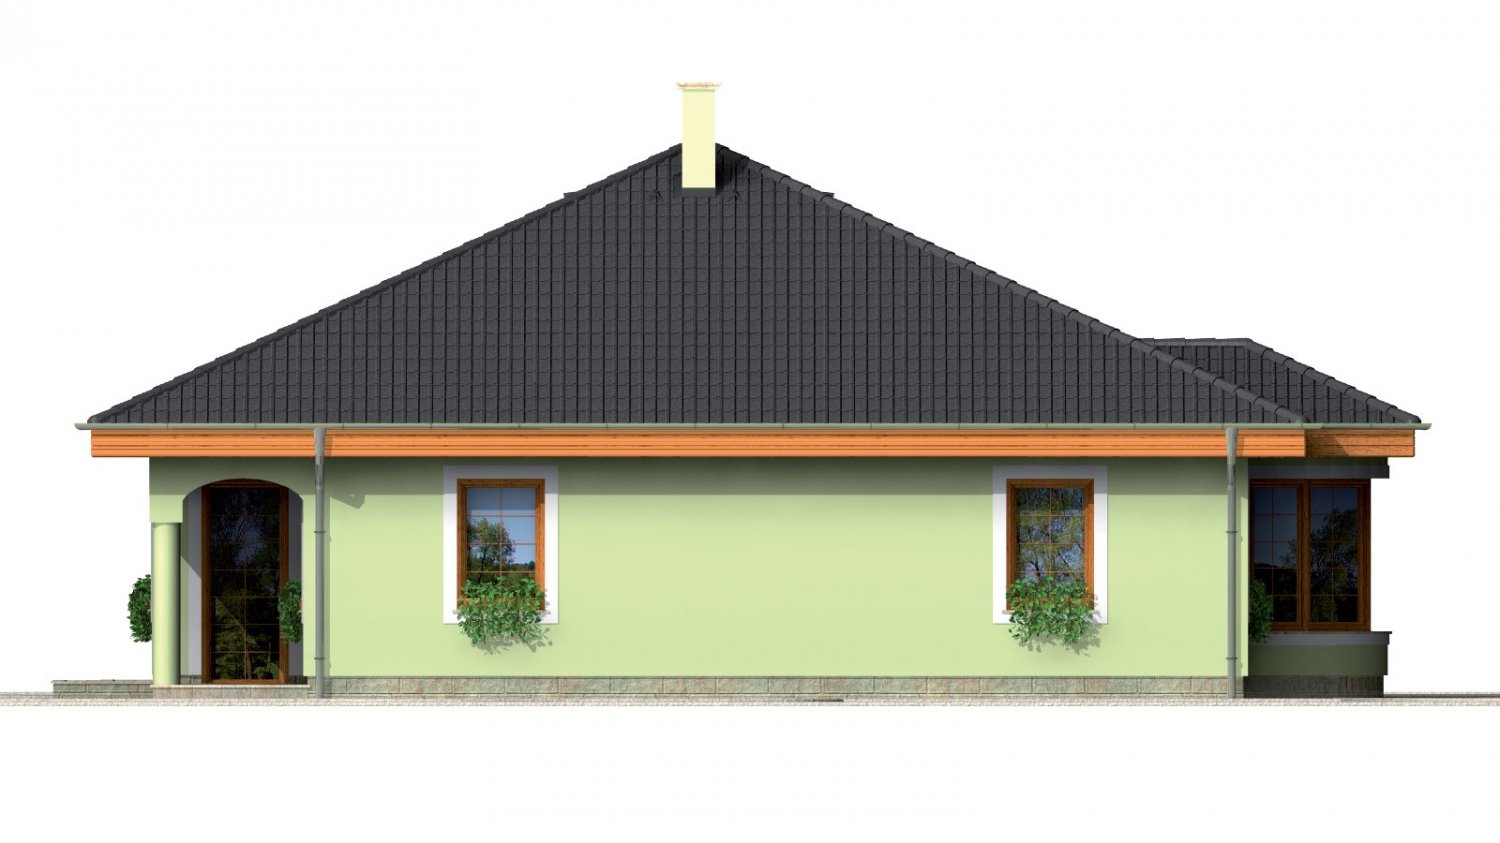 Pohľad 2. - Přízemní projekt domu s krytou terasou a obloukovým jídelním koutem.